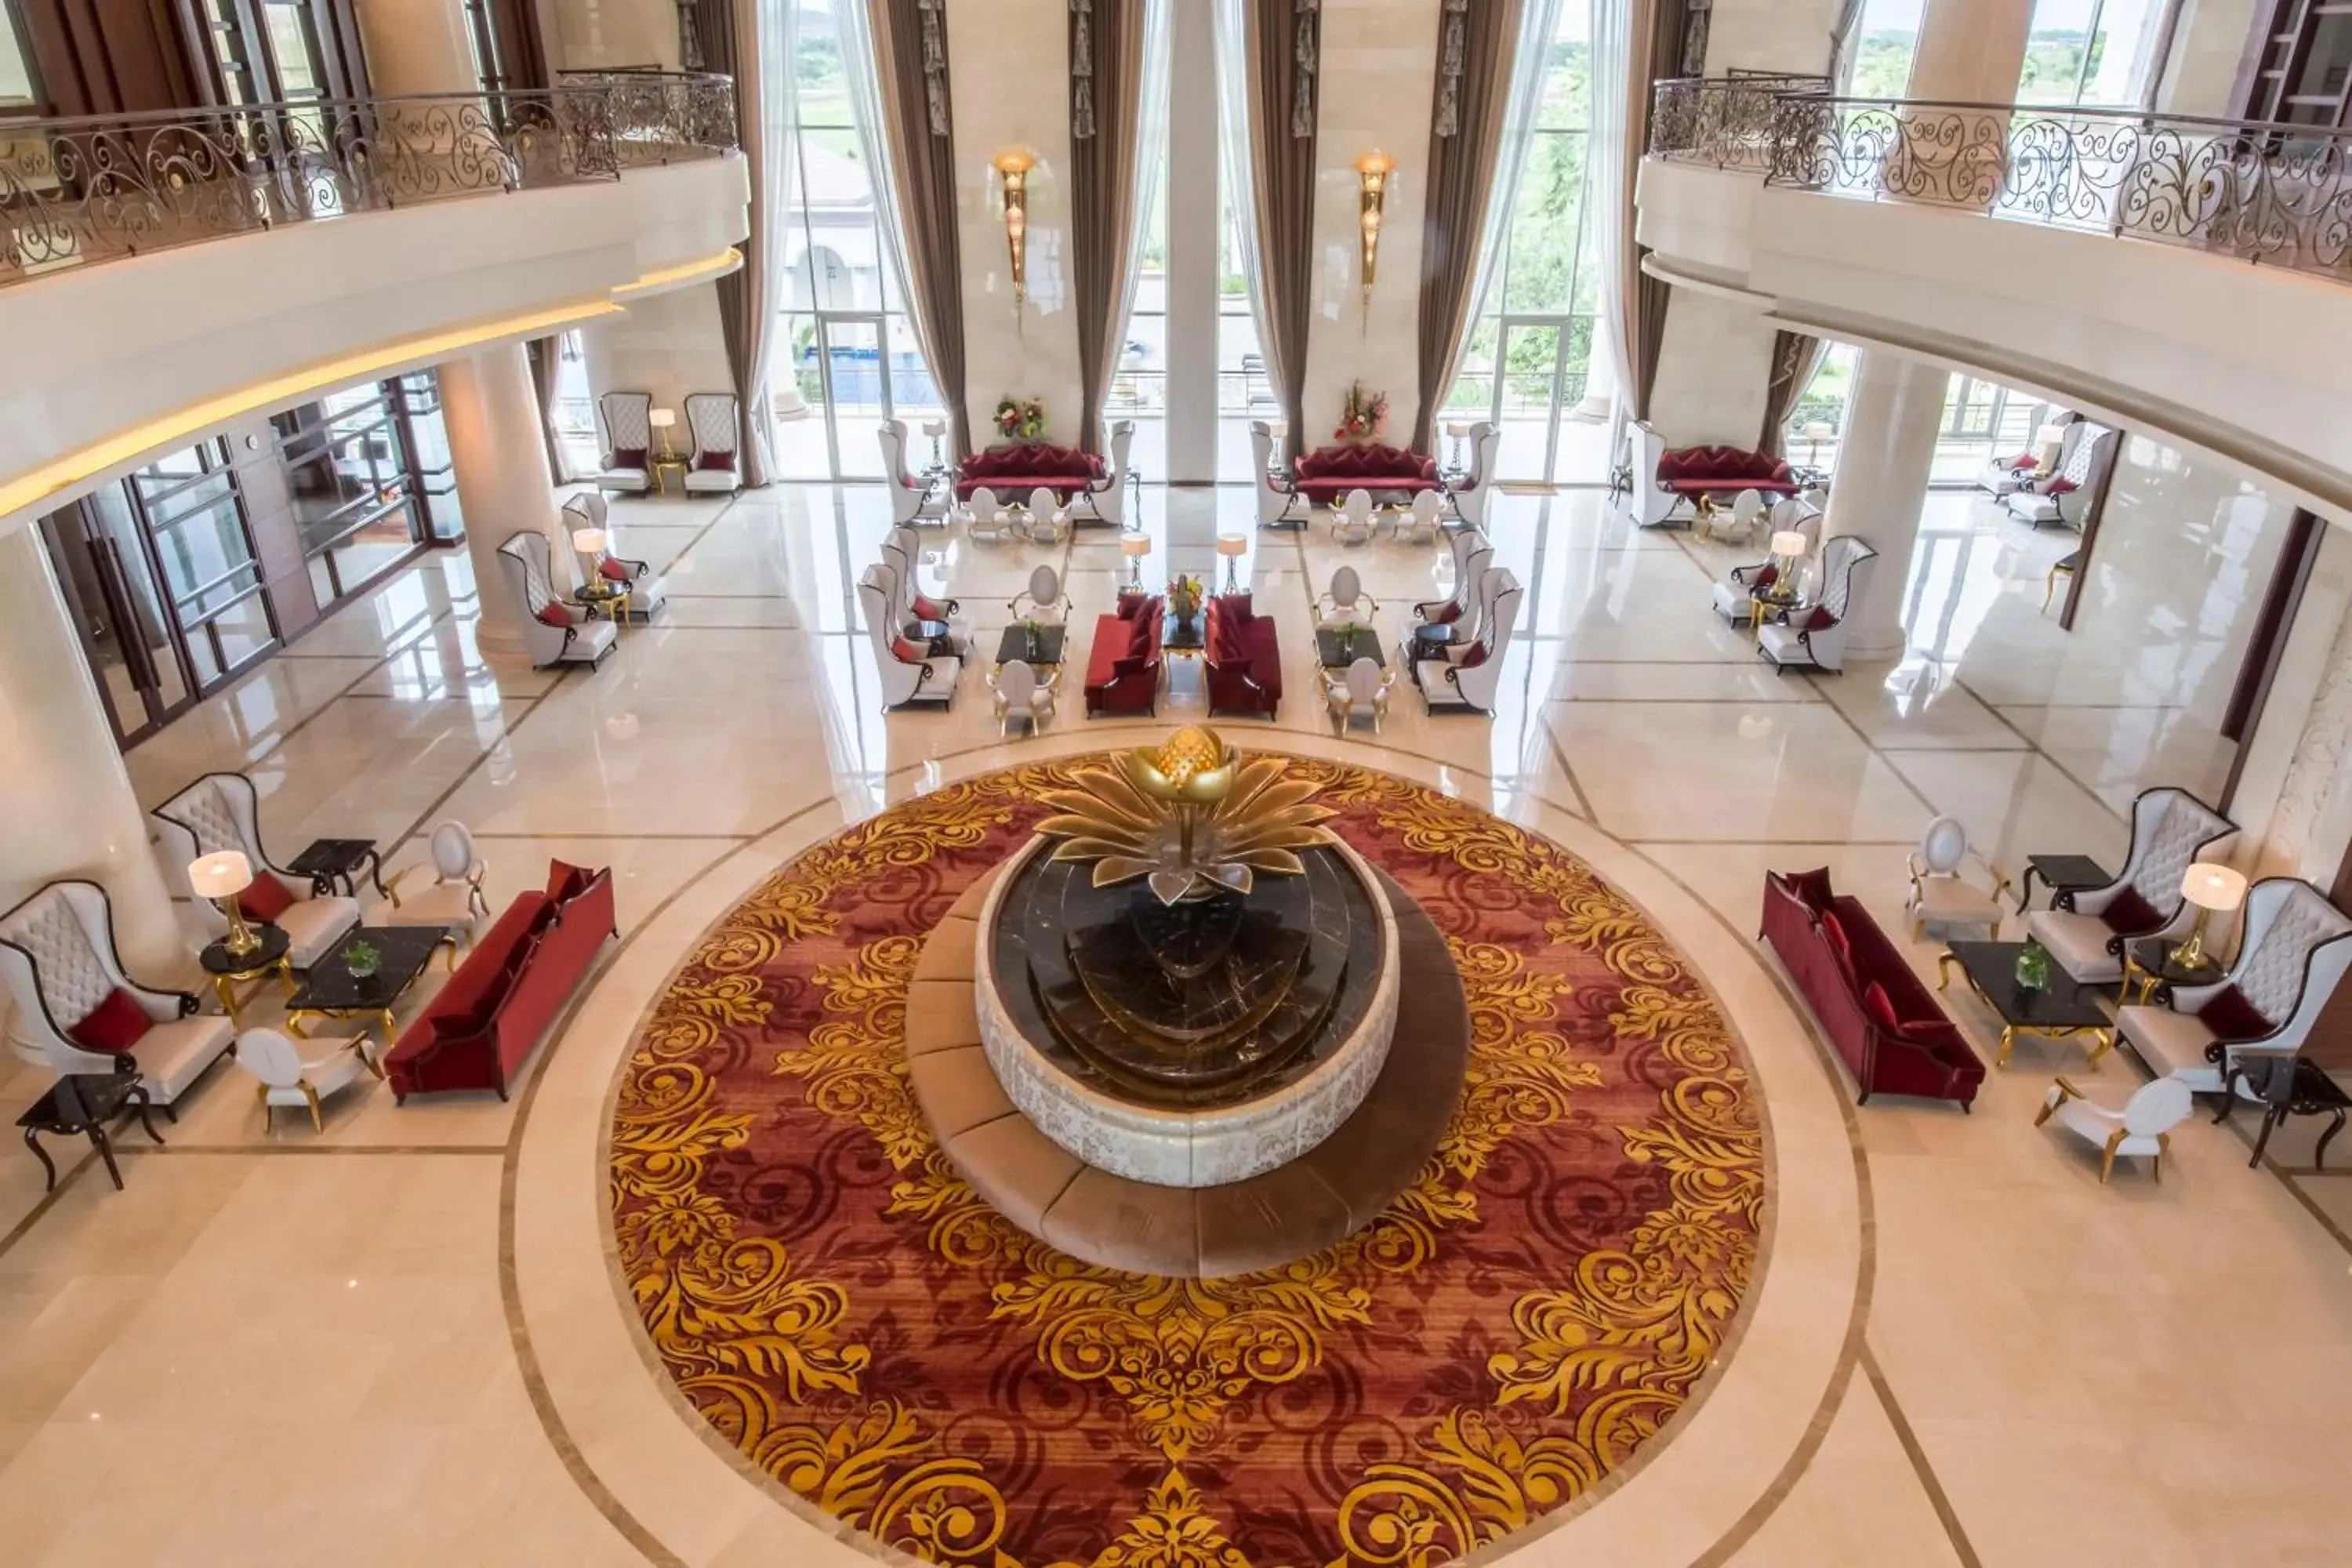 Lobby or reception, Banquet Facilities in Garden City Hotel